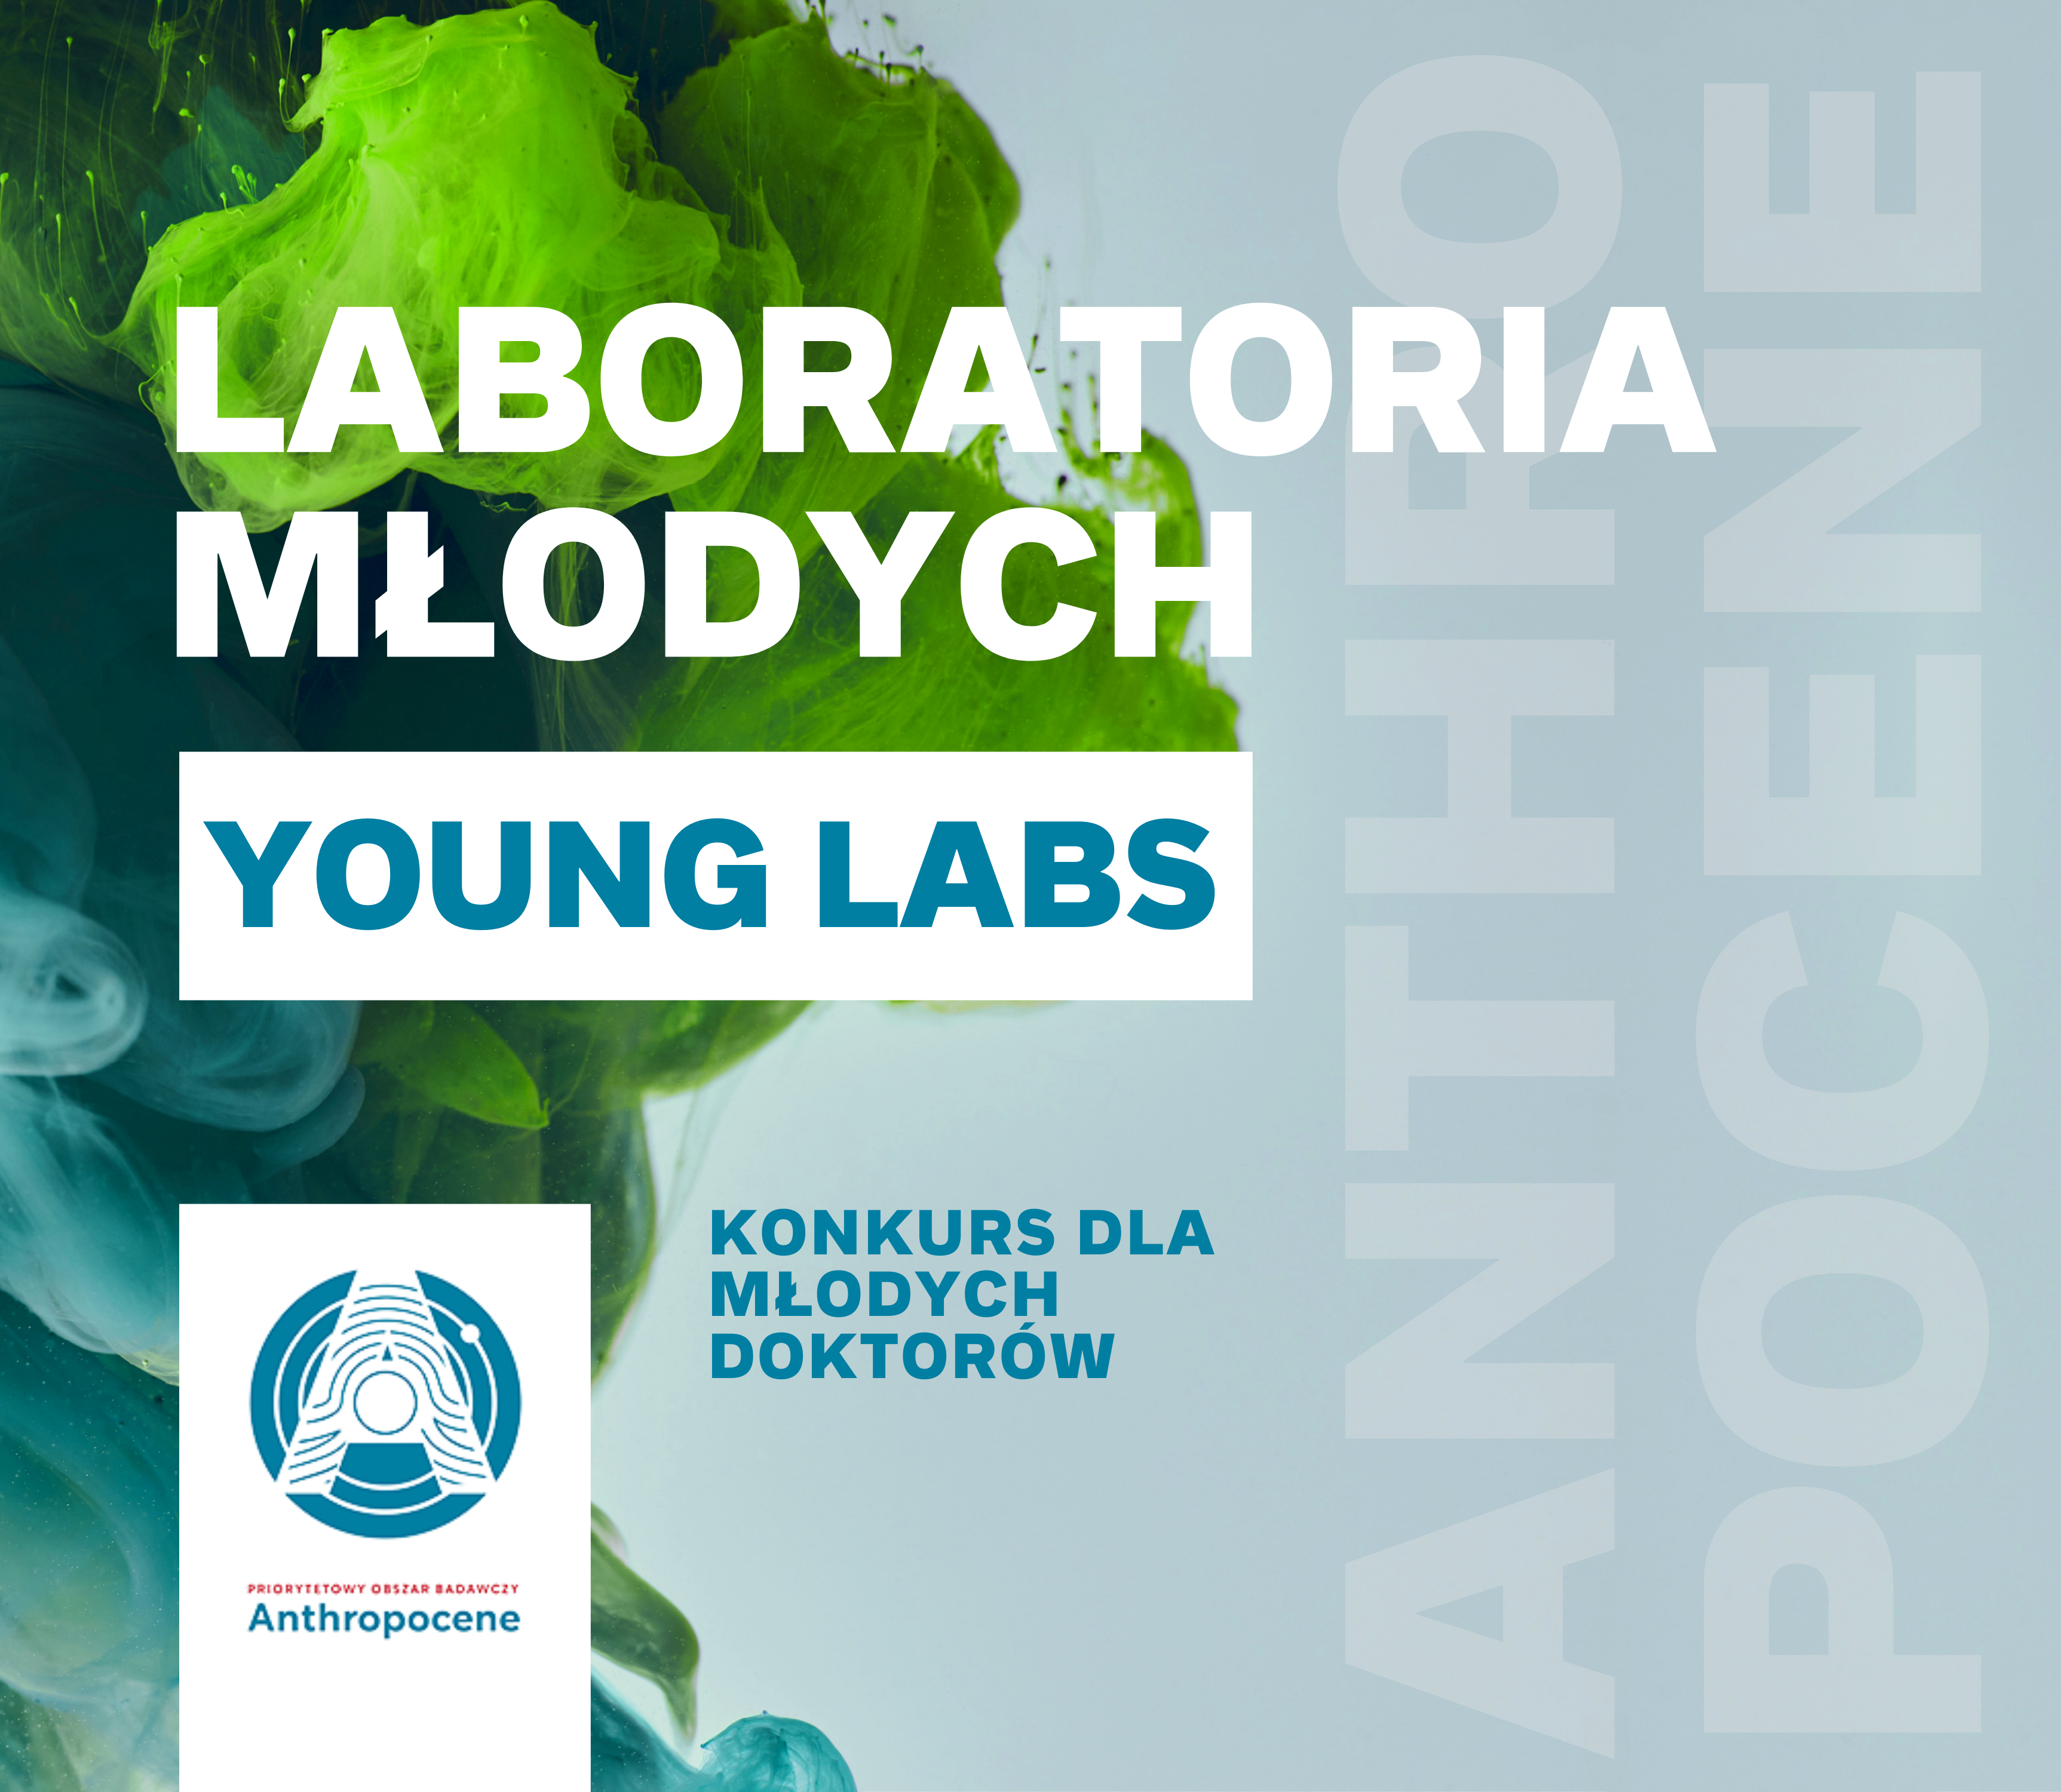 Grafika o treści: „Laboratoria młodych” (Young Labs) ANTHROPOCENE, konkurs dla młodych doktorów. Na grafice znajduje się również logo POB Anthropocene.